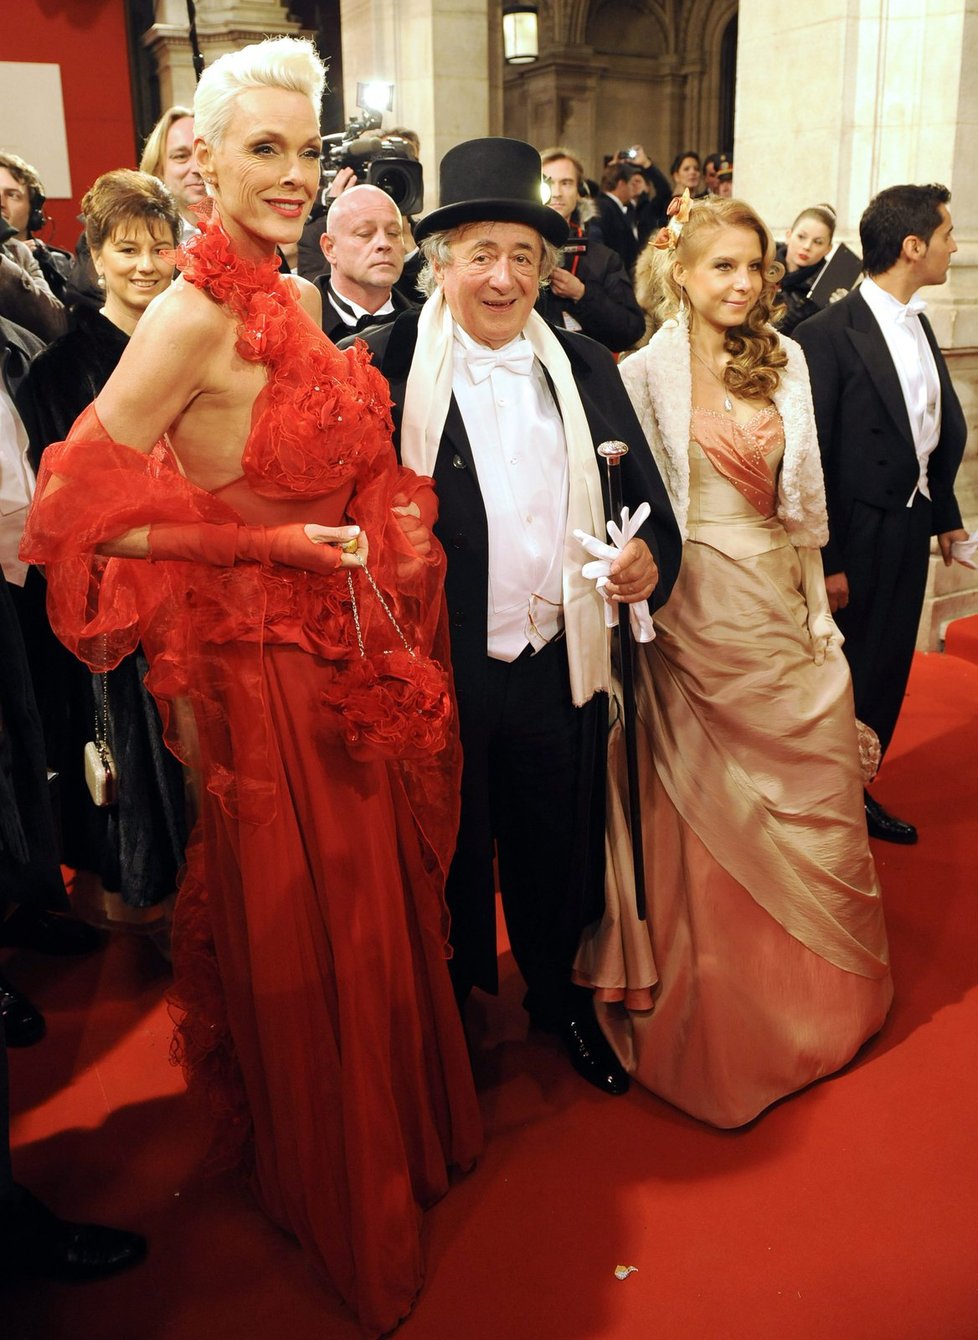 Exmanželka herce Sylvestera Stalloneho, Brigitte Nielsen, měla odvážnou rudou róbu